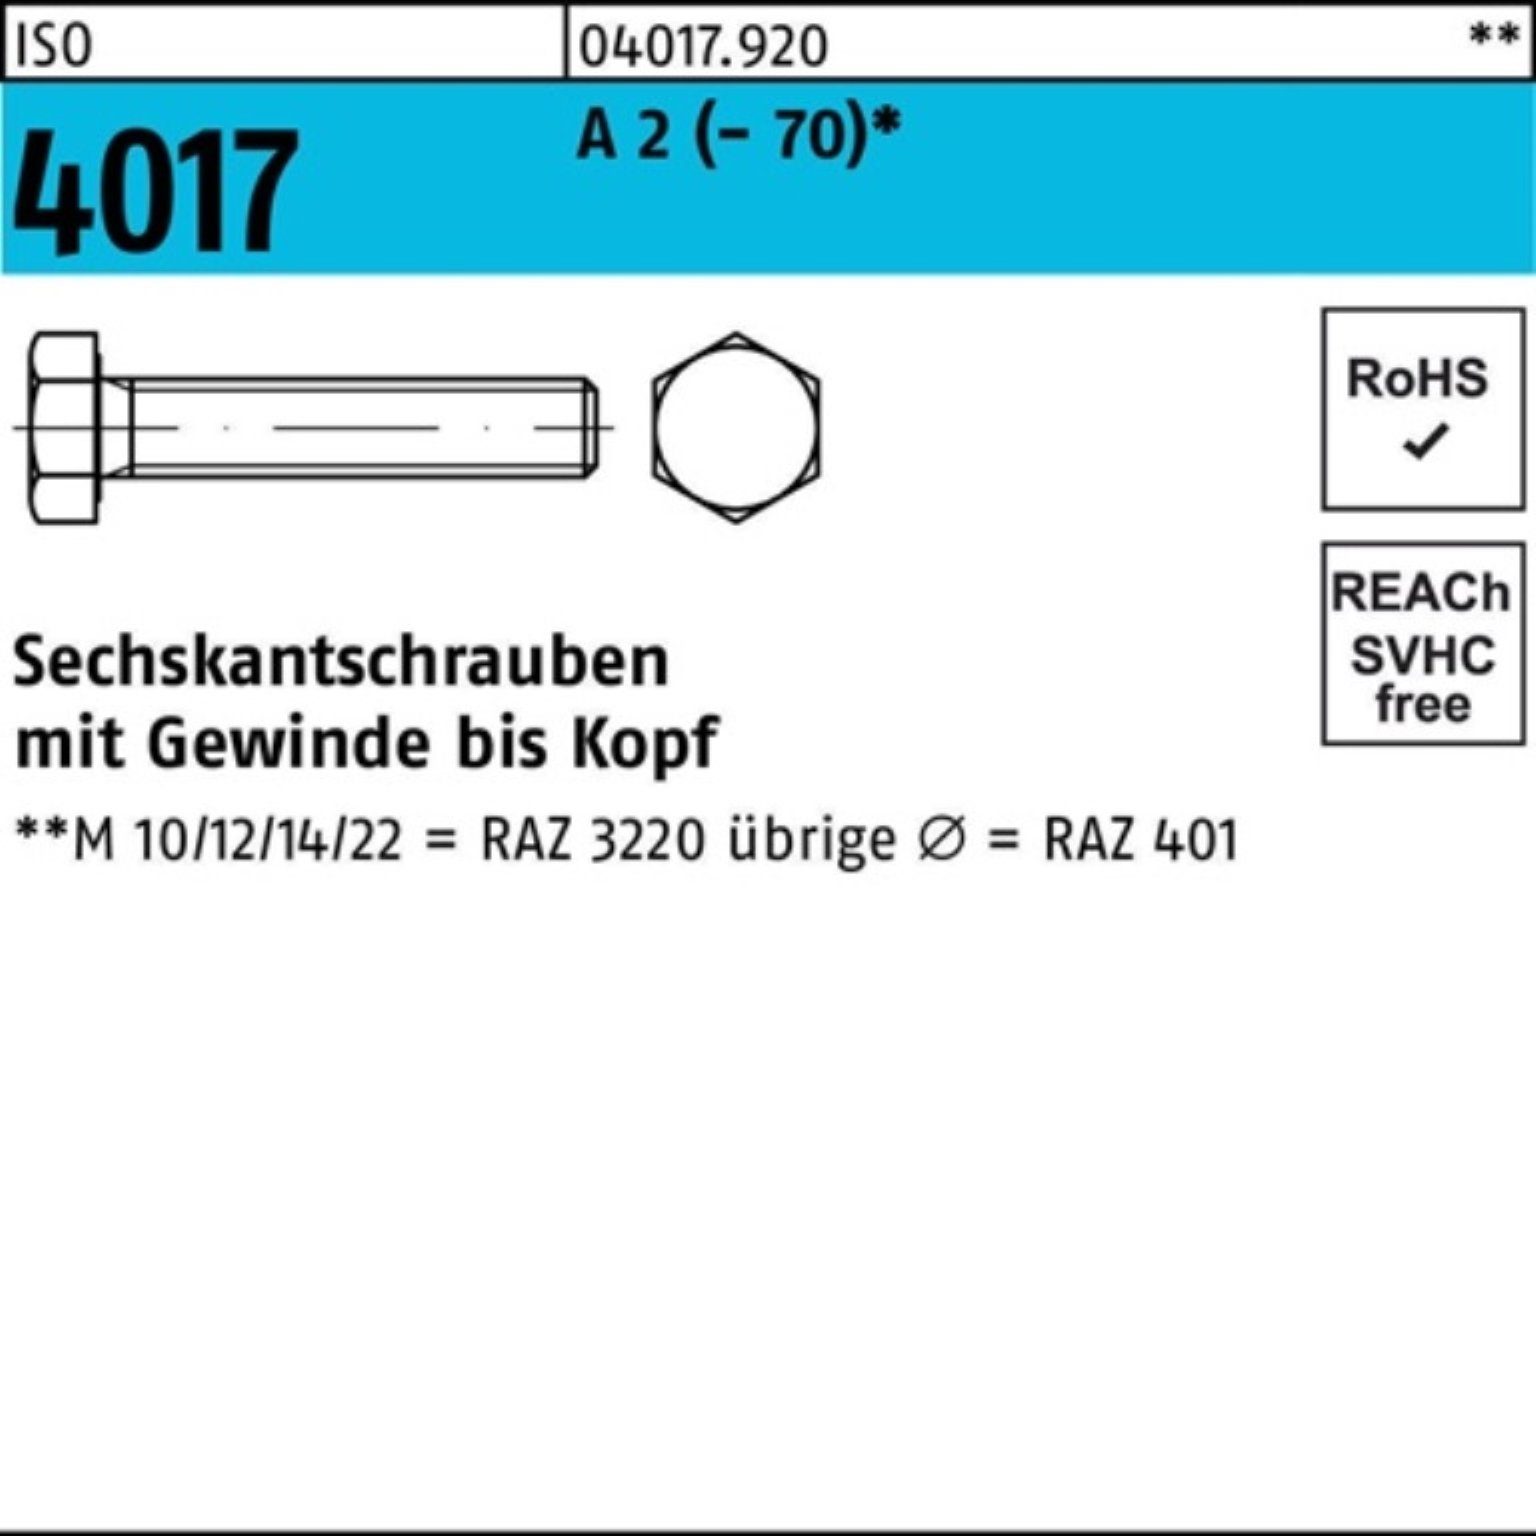 Bufab Sechskantschraube 100er Pack Sechskantschraube ISO 4017 VG M10x 140 A 2 (70) 1 Stück